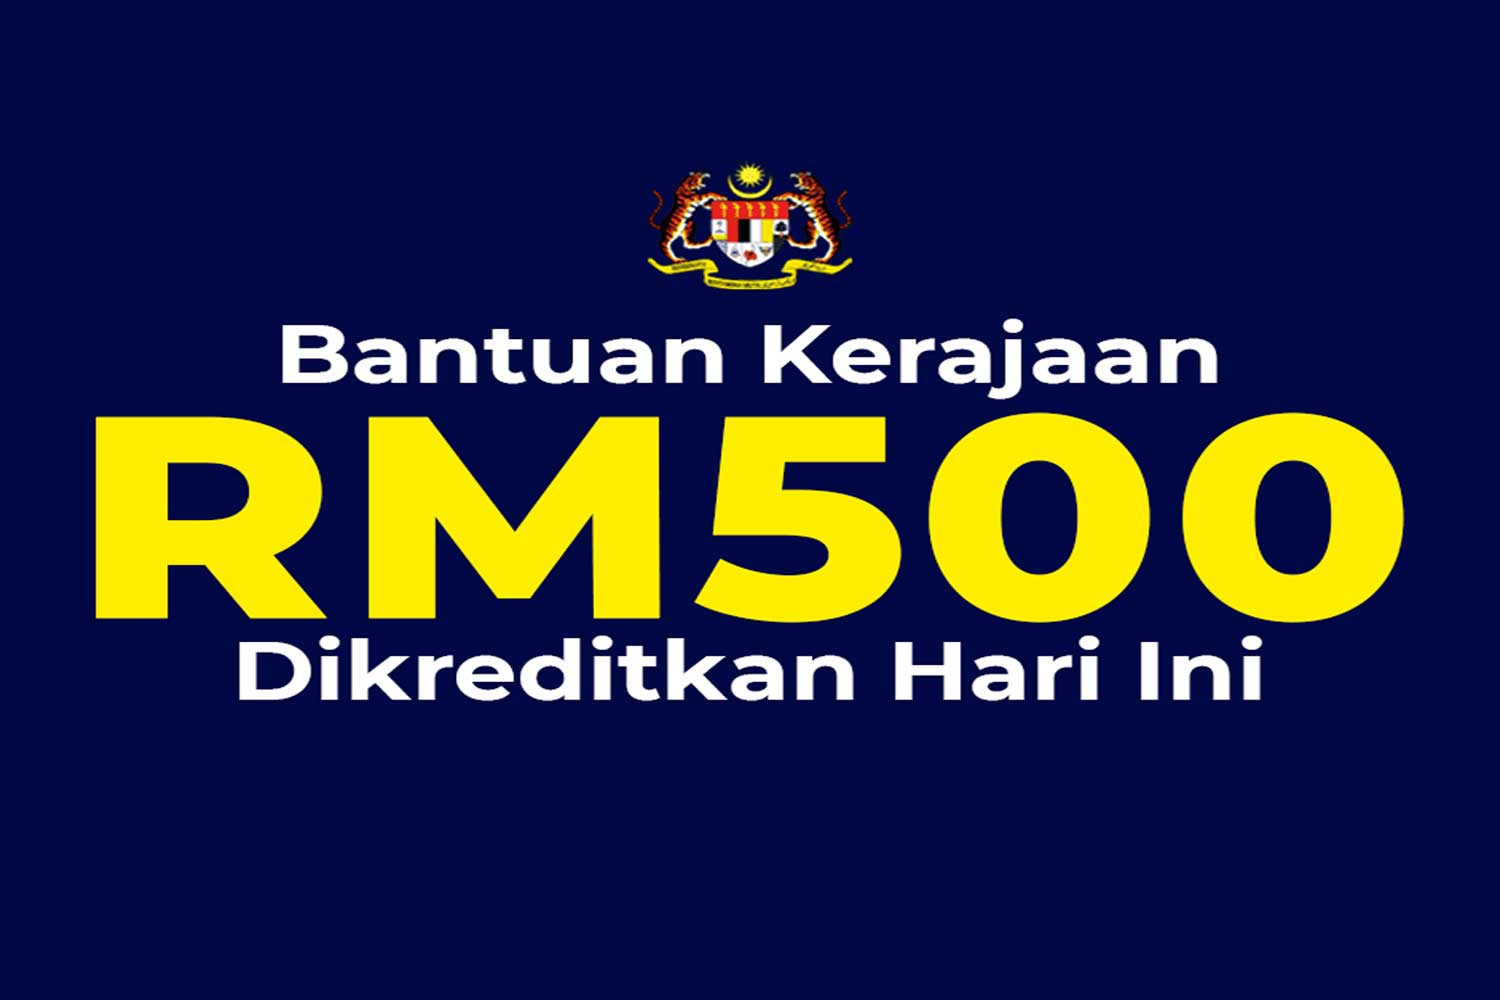 Bantuan RM500 mula dikreditkan ke akaun, boleh mula semak